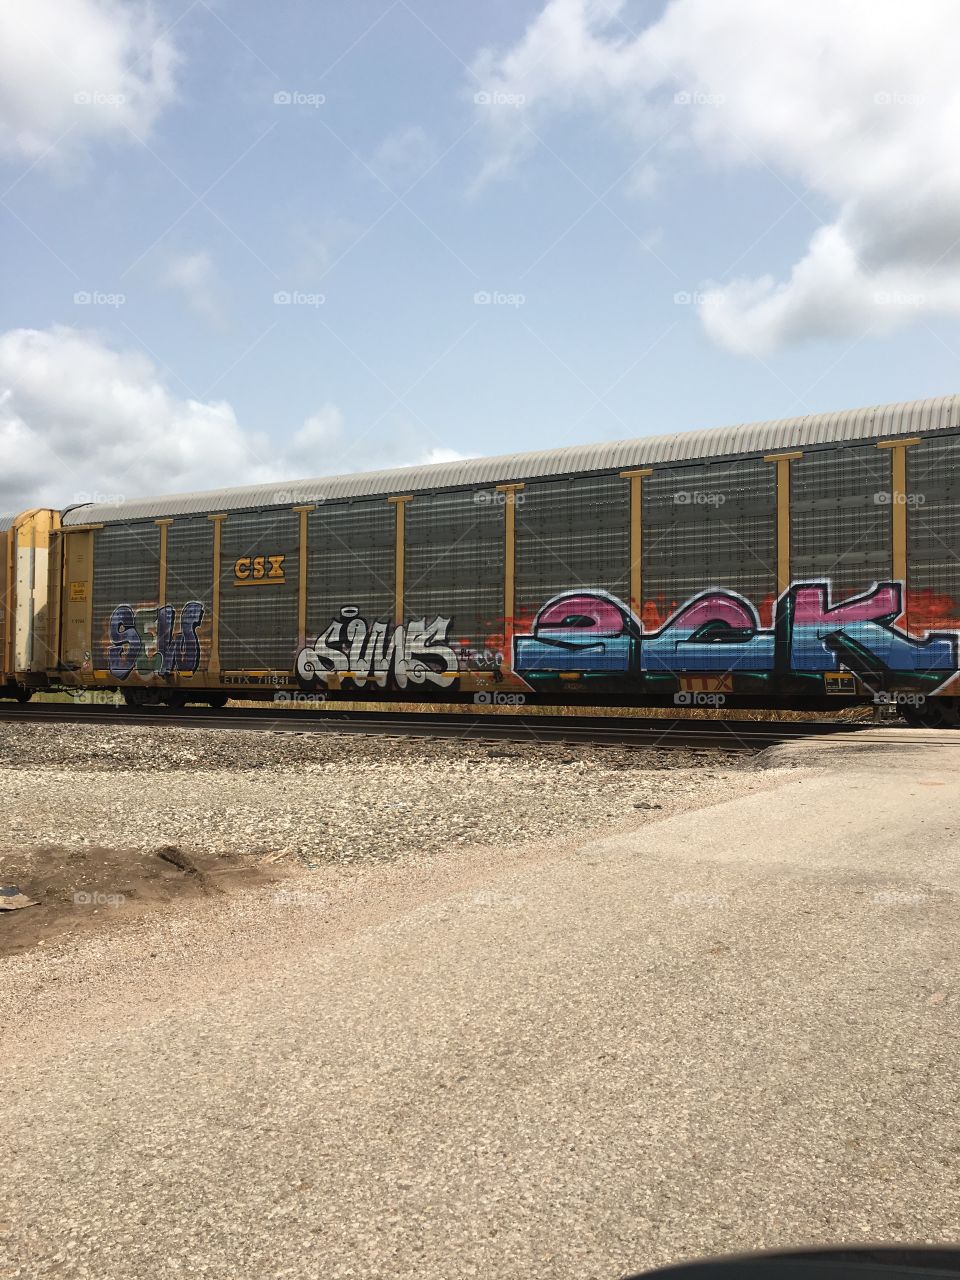 Railway graffiti 4